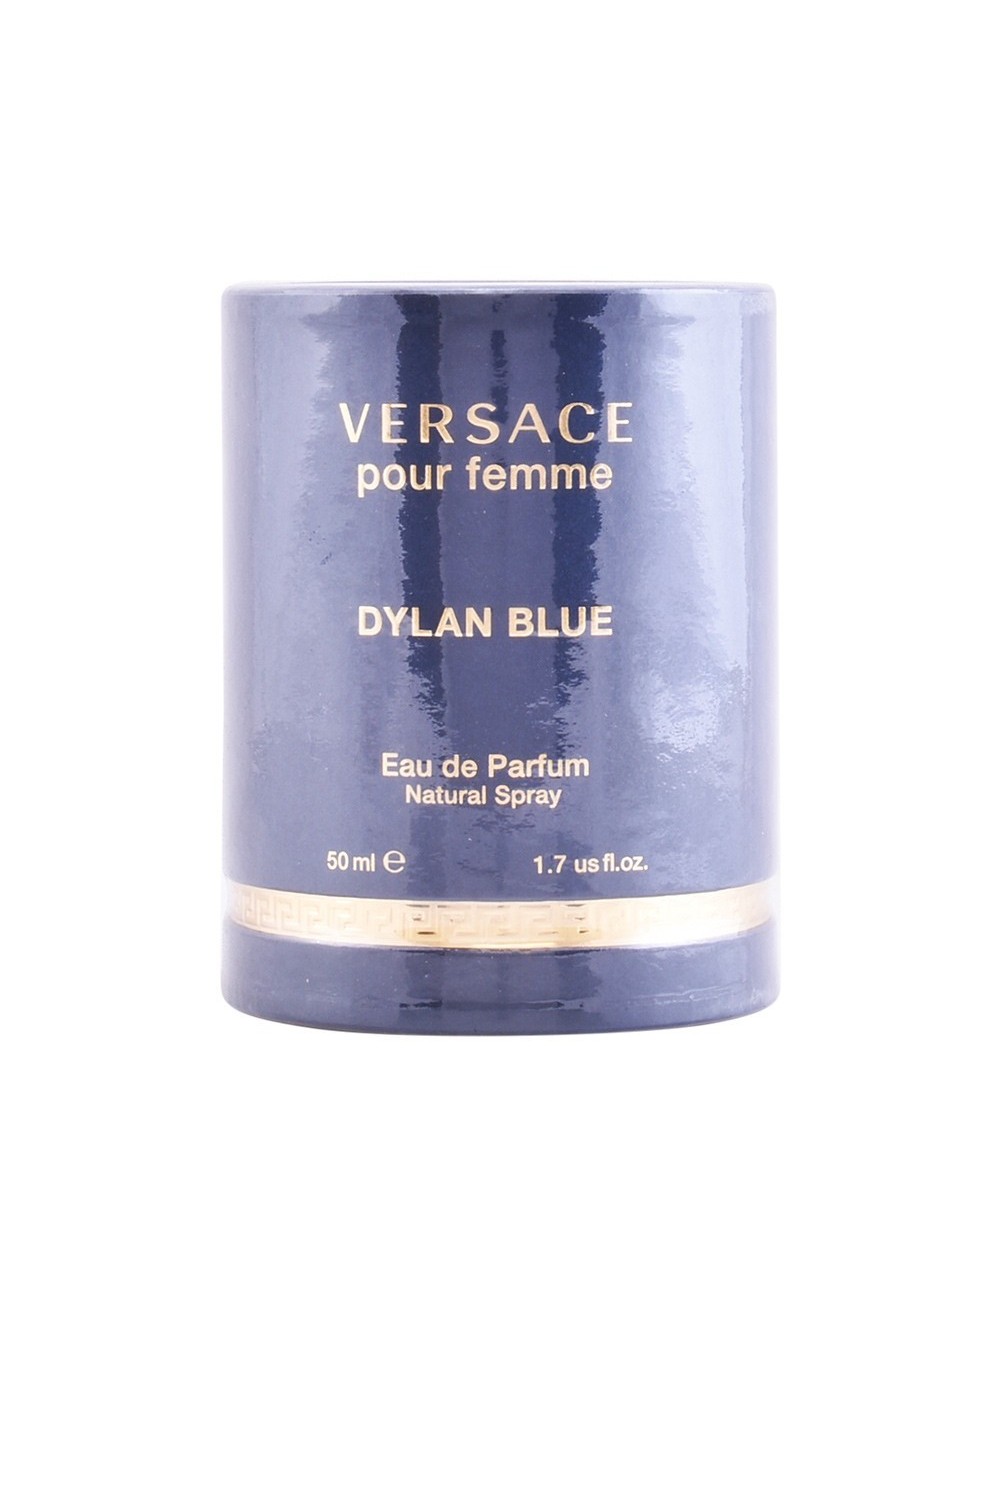 Versace Pour Femme Dylan Blue Eau De Perfume Spray 50ml